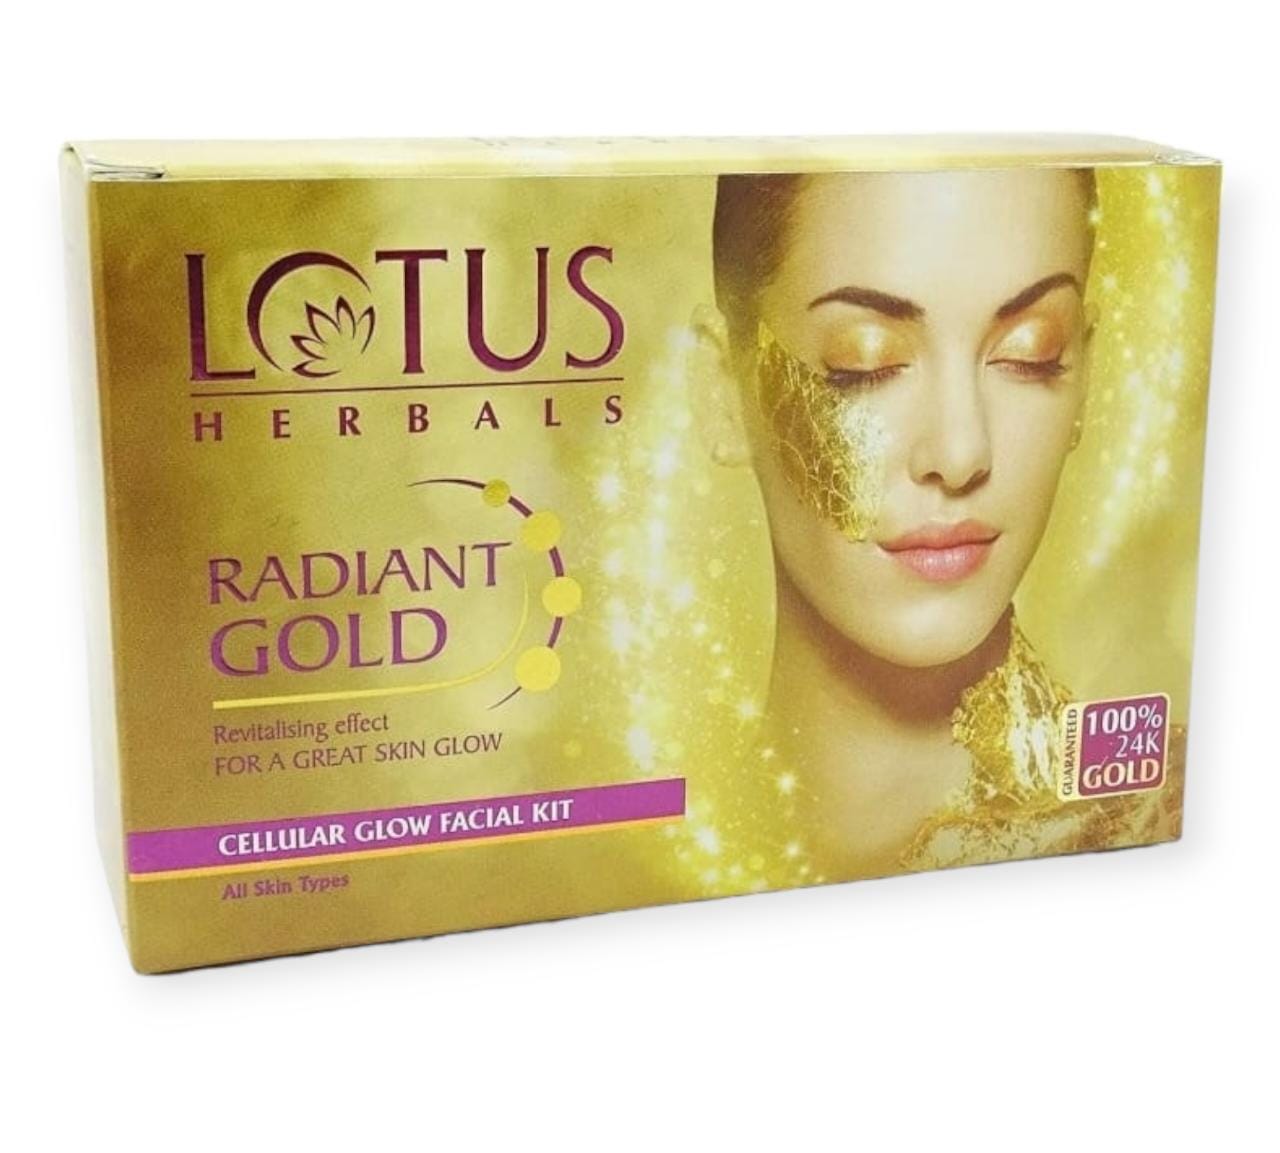 Lotus Herbals facial kit 